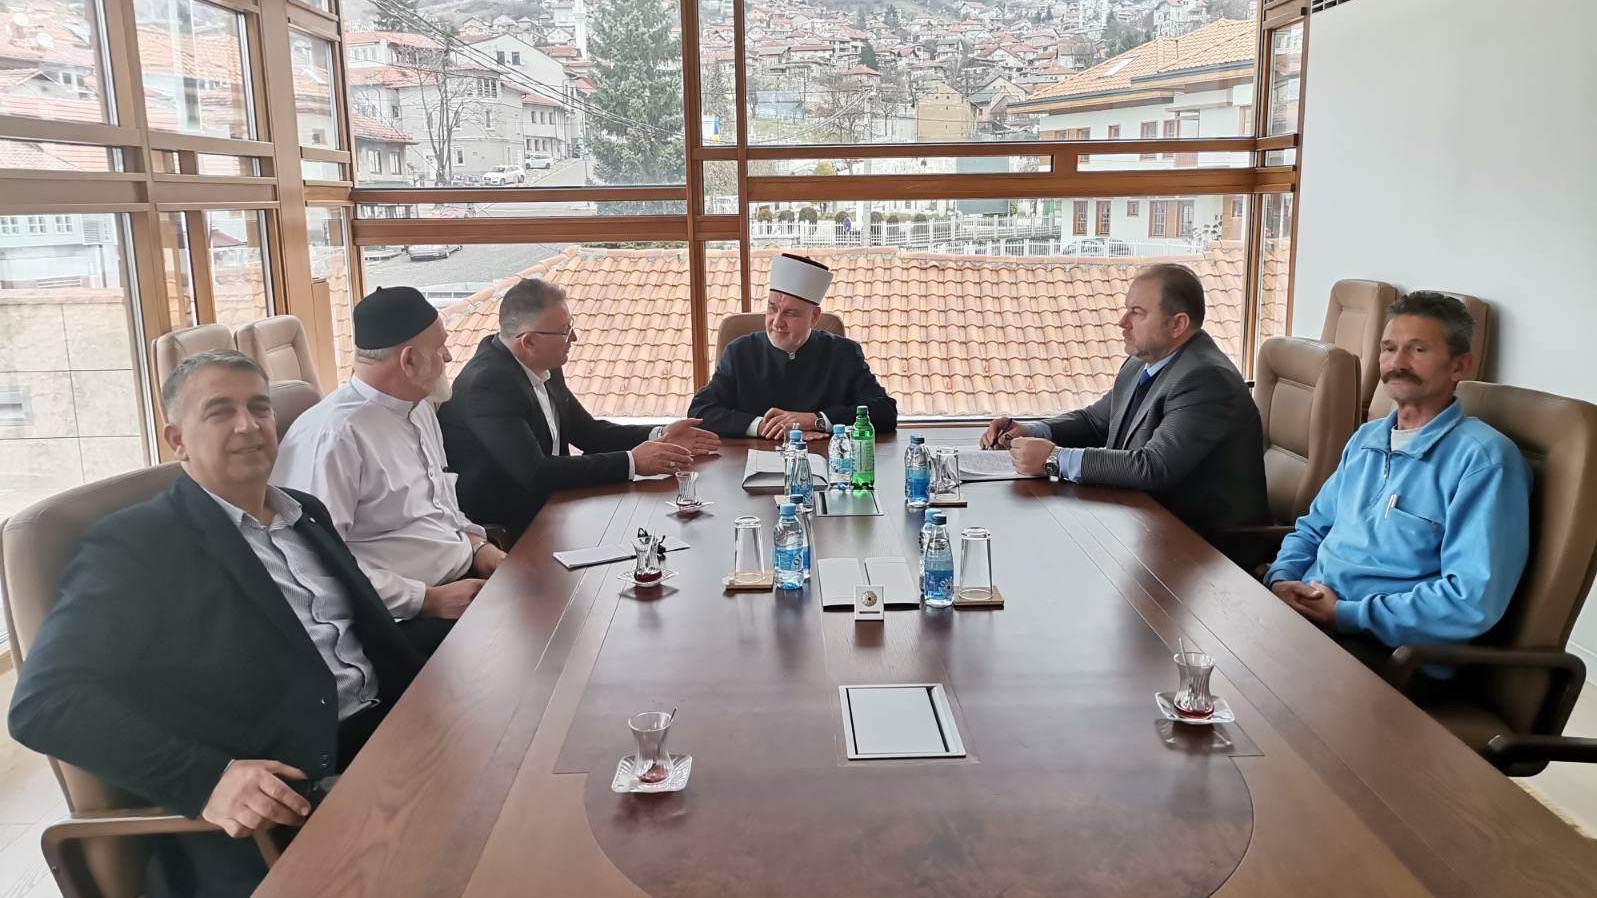 Reisul-ulemu posjetila delegacija MIZ Ljubuški